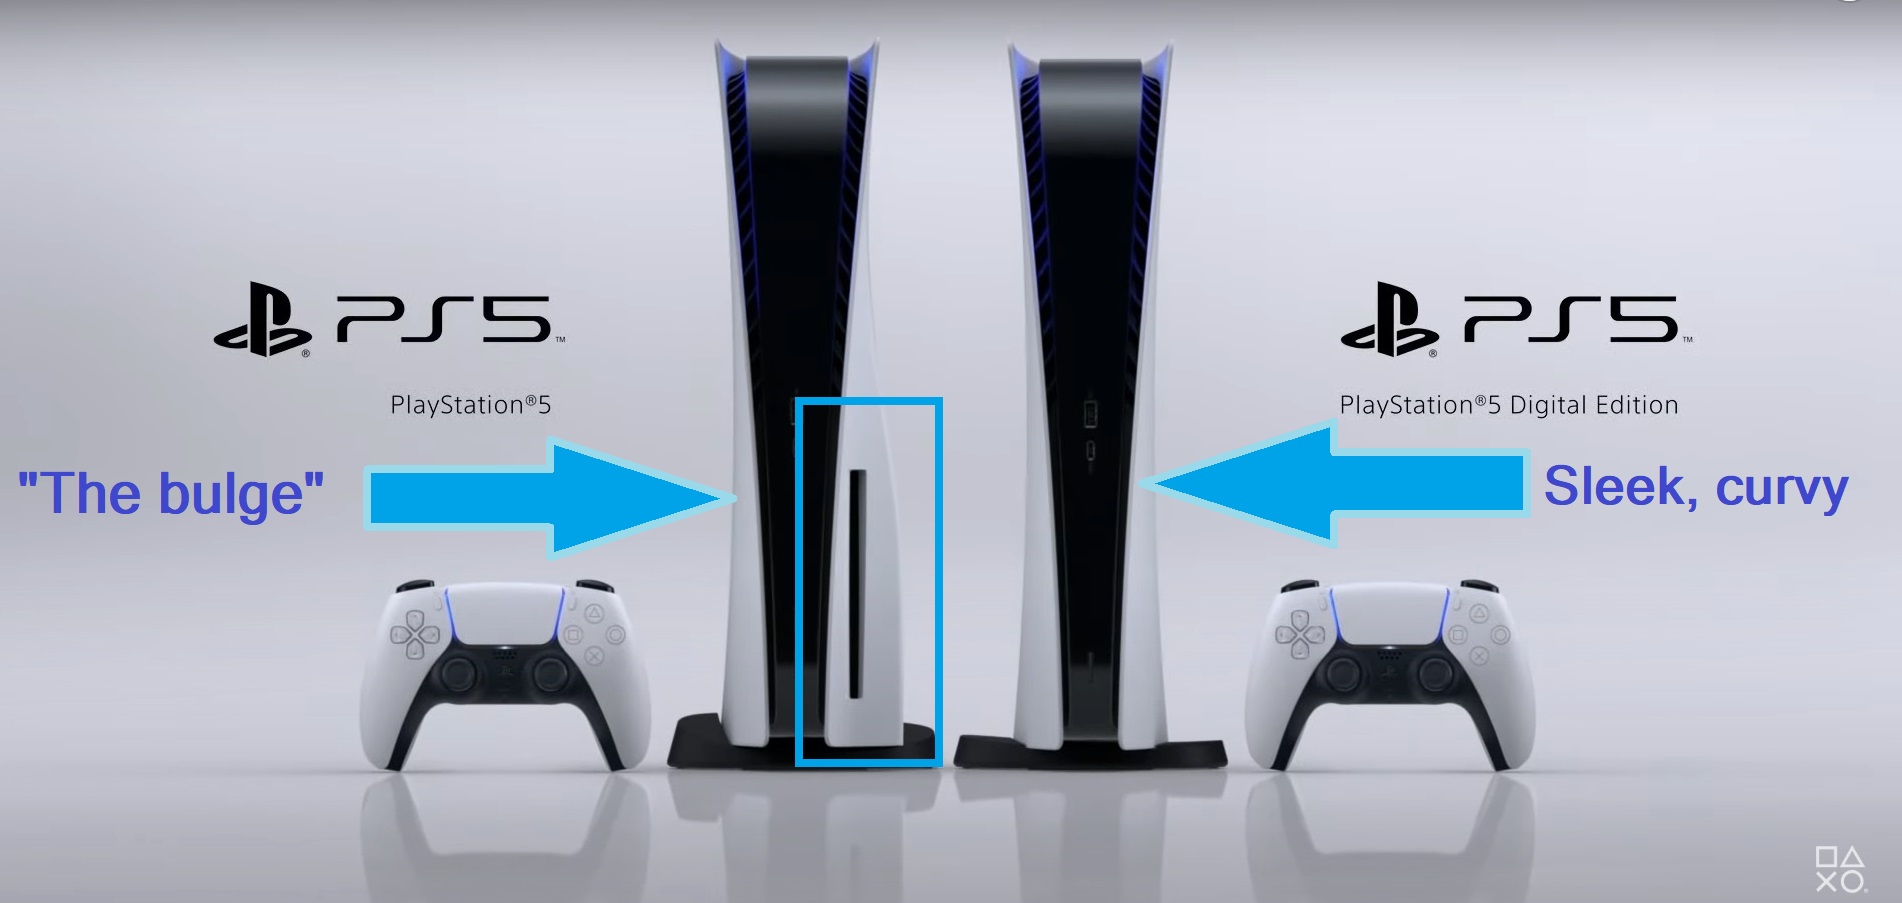 PS5 Digital Edition vs. regular